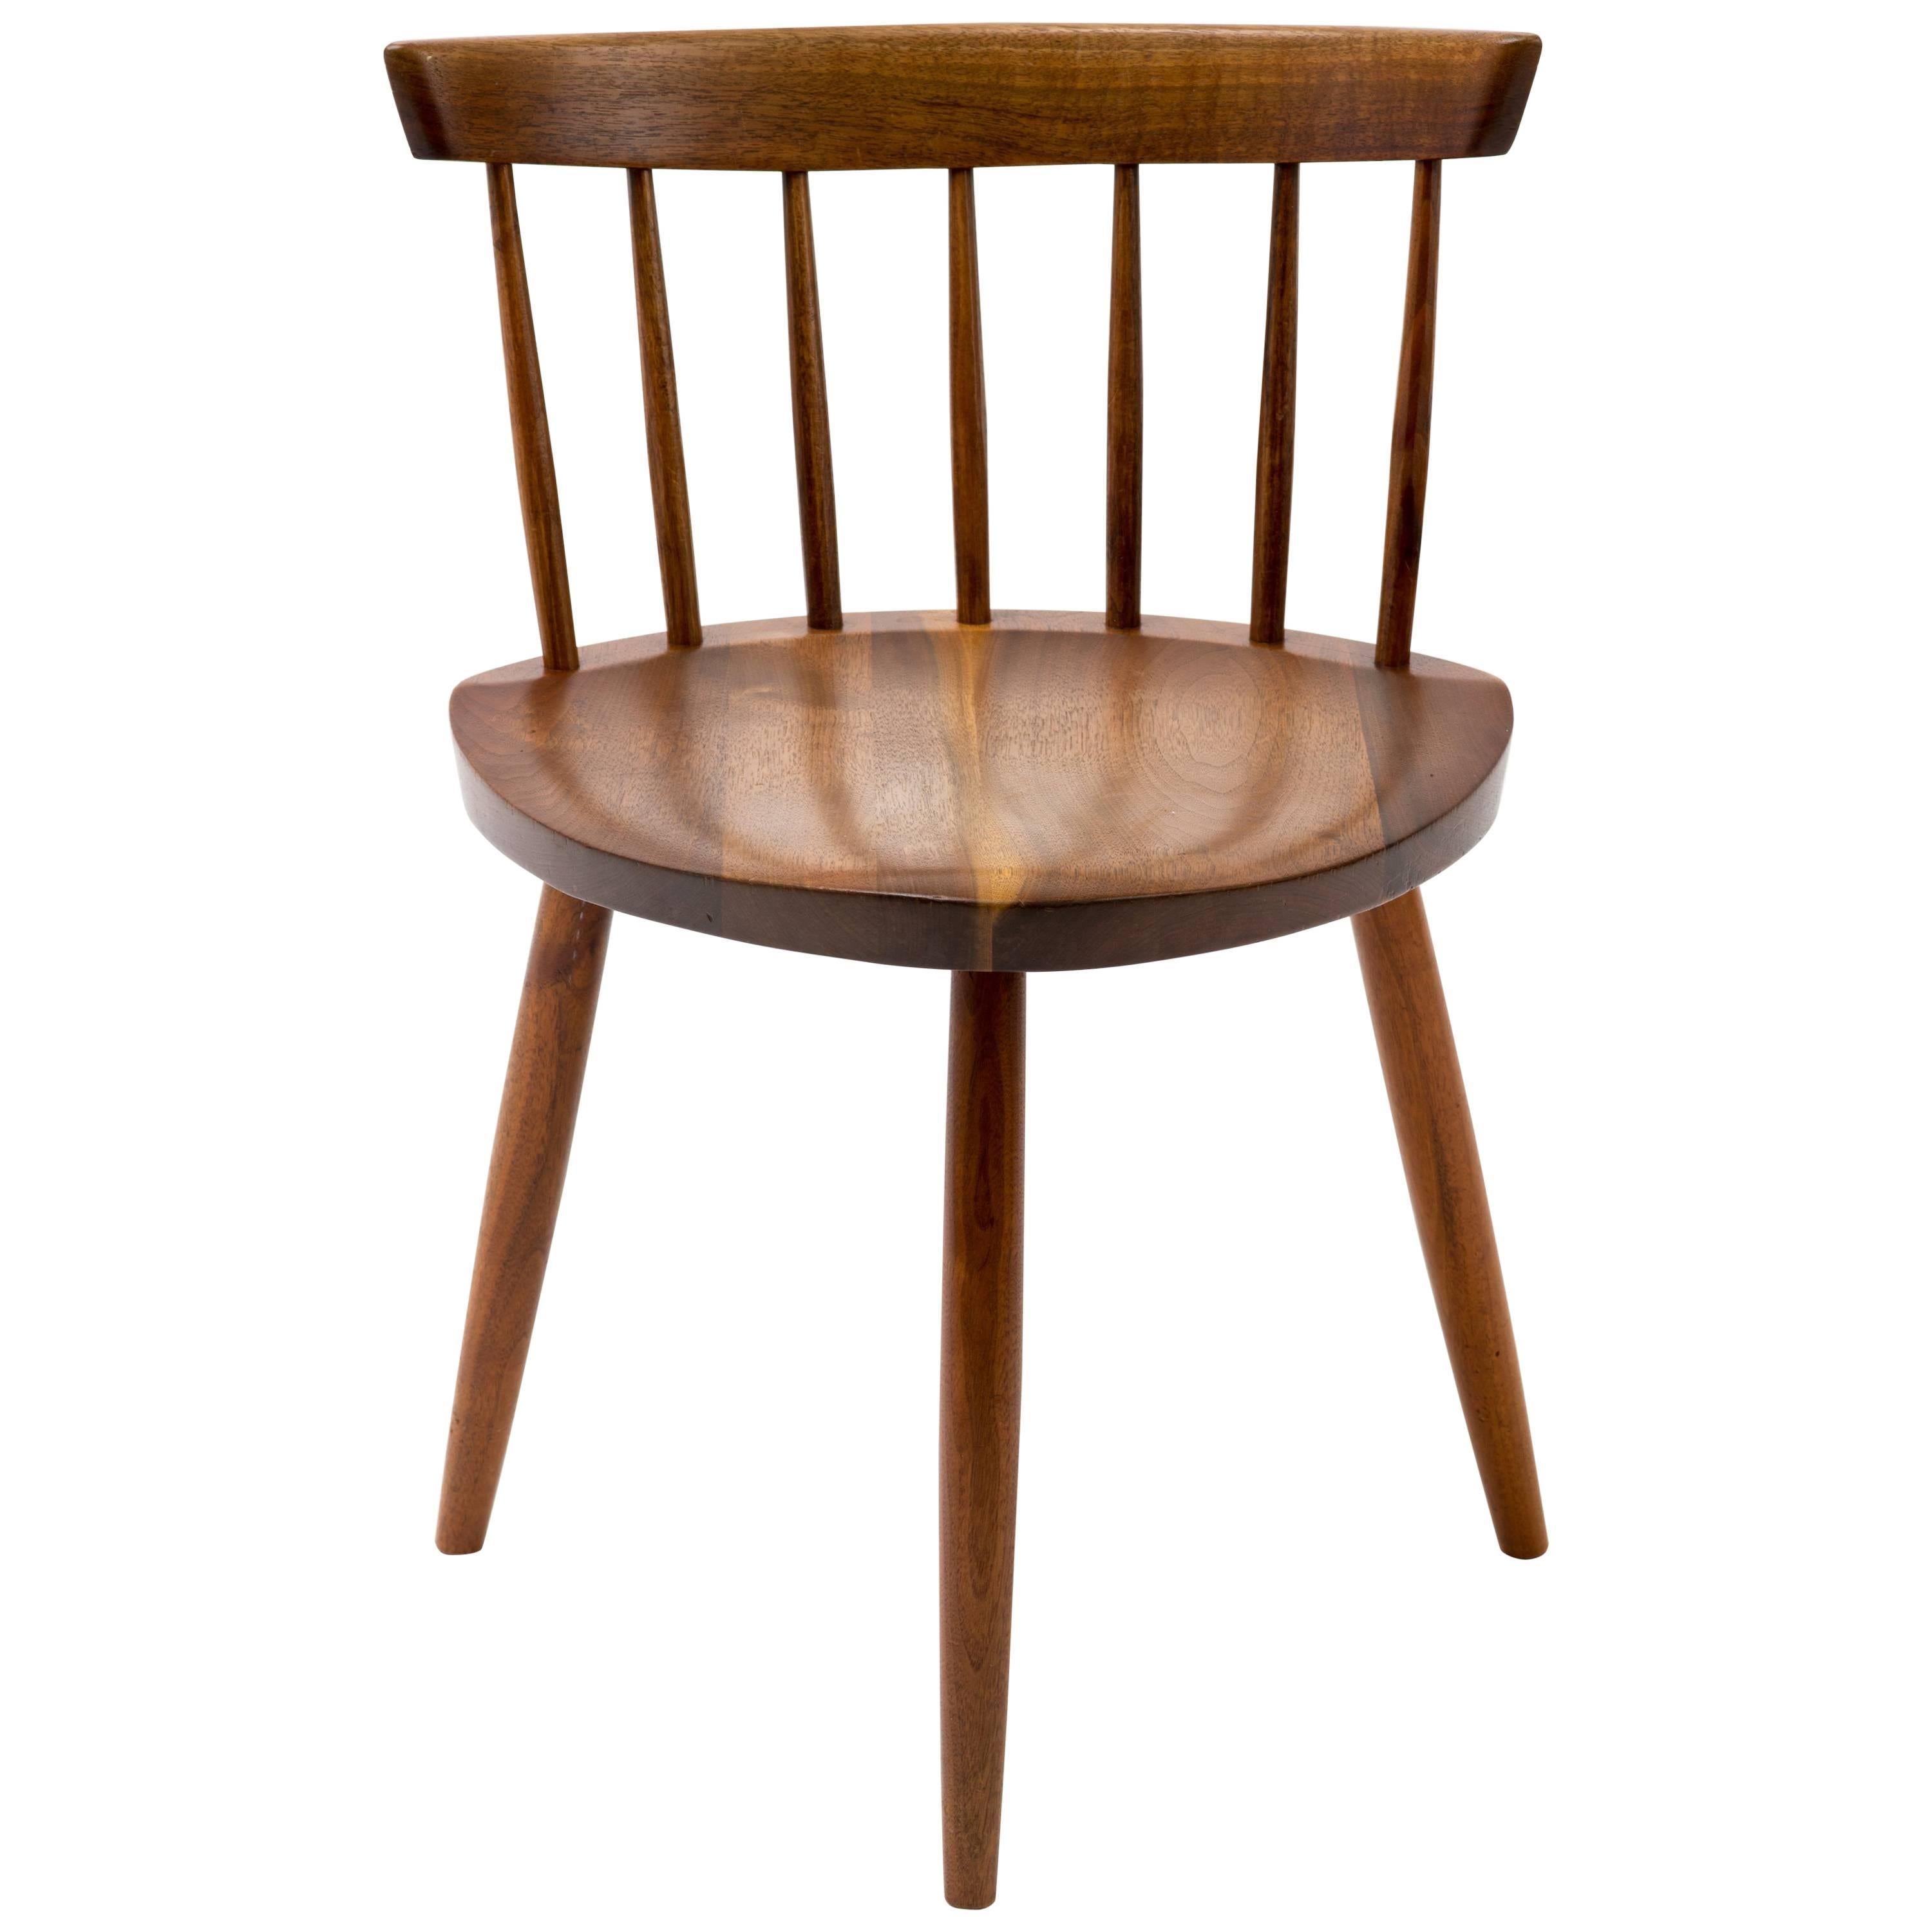 George Nakashima Mira Chair, 1964